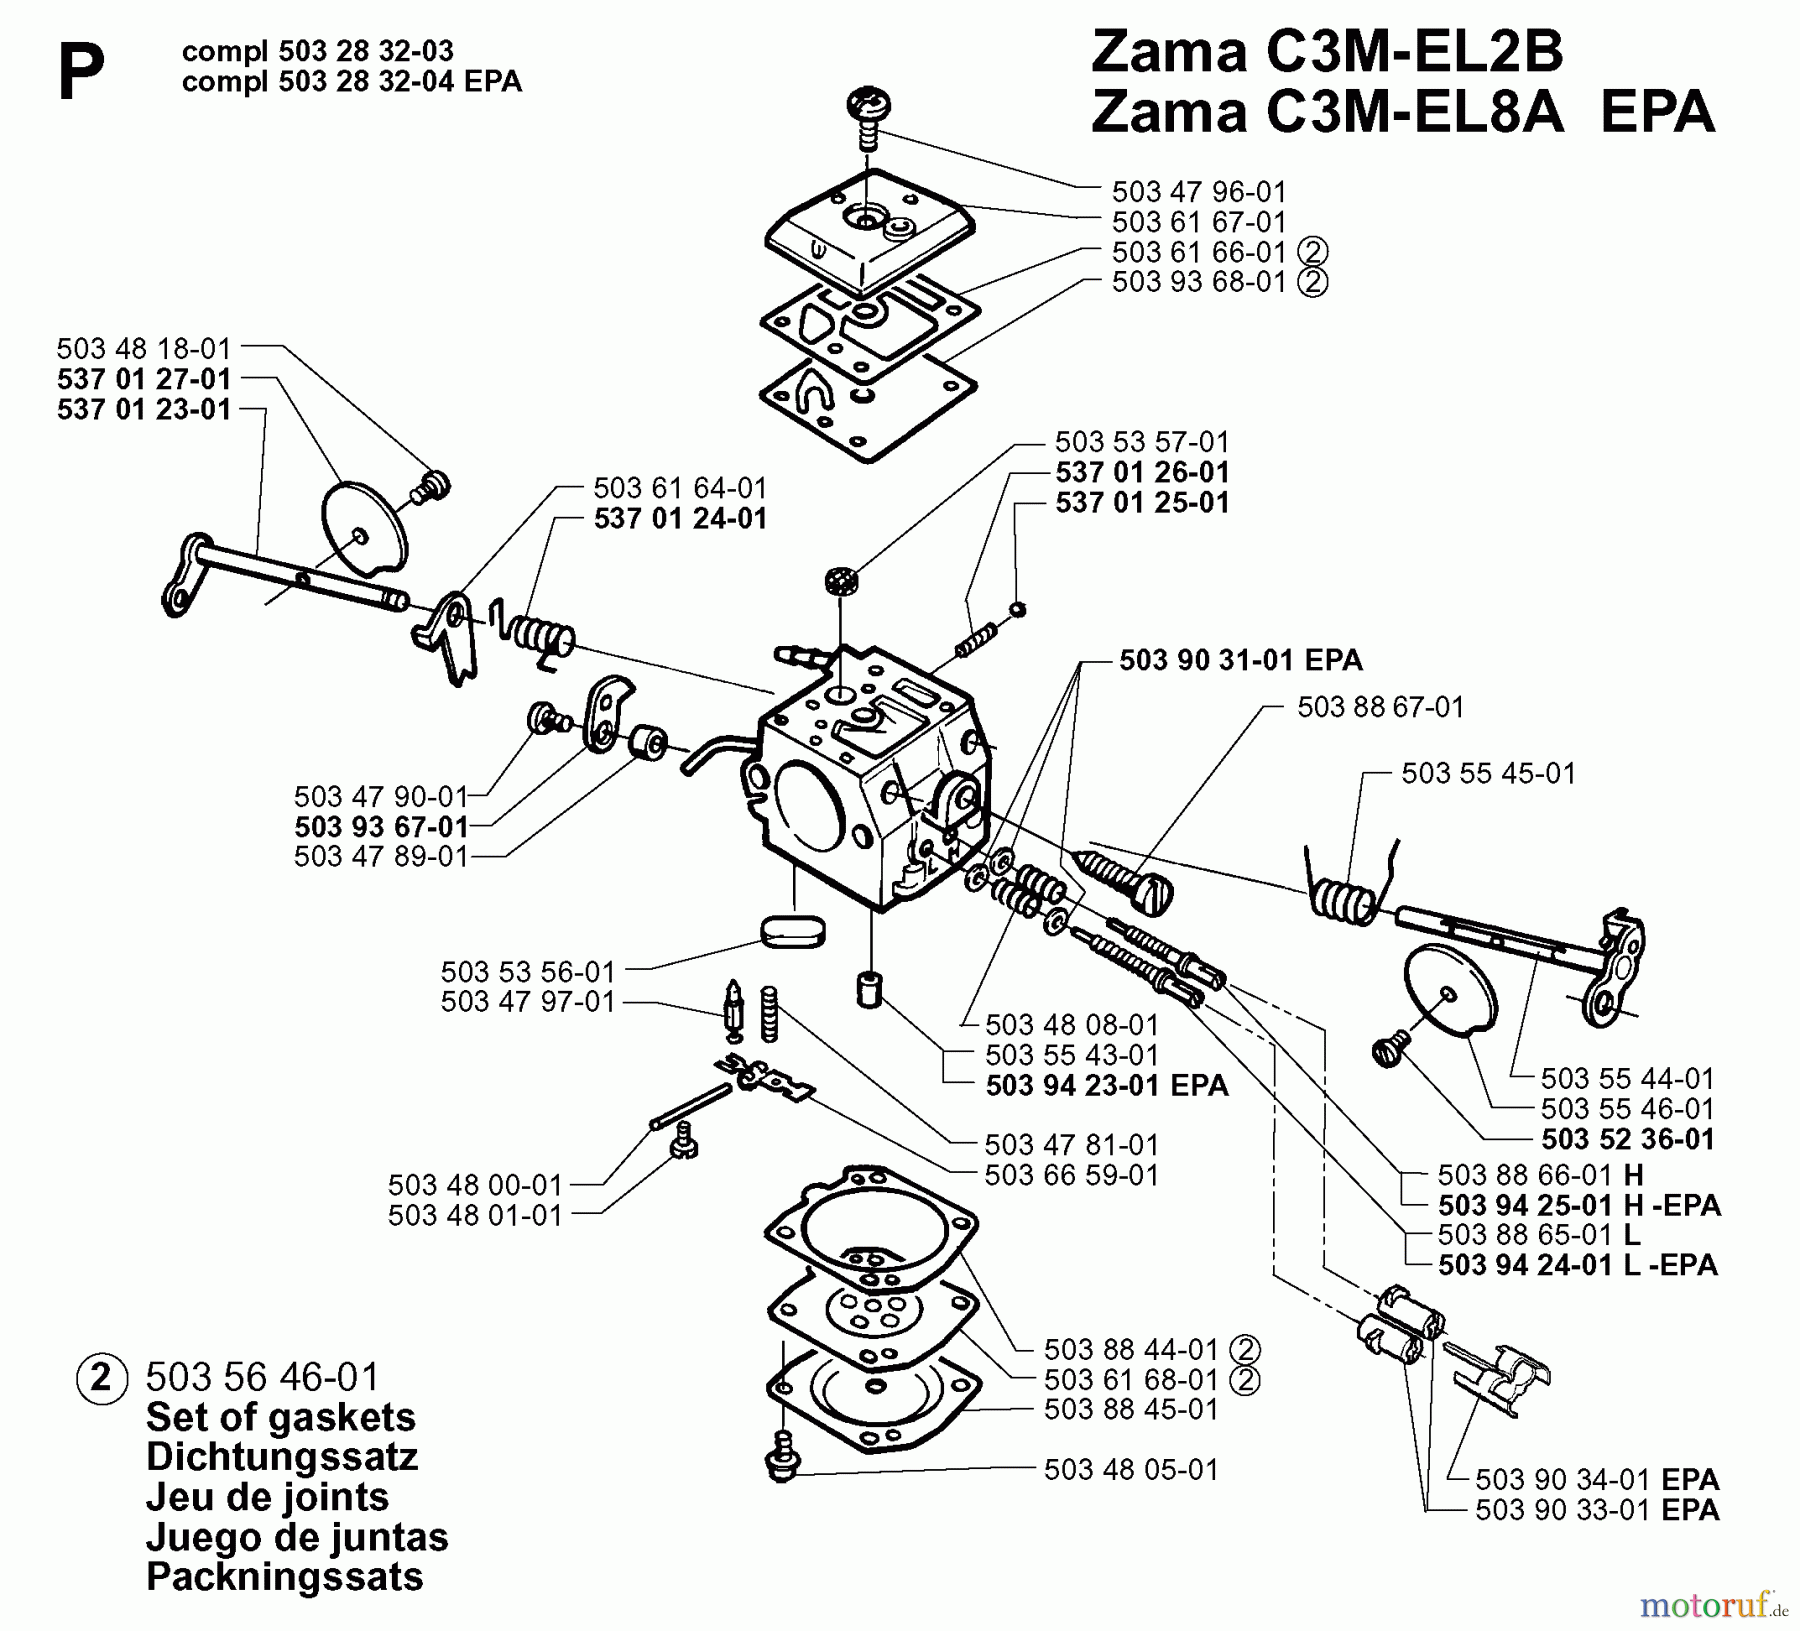  Jonsered Motorsägen 2065 EPA - Jonsered Chainsaw (1999-03) CARBURETOR DETAILS